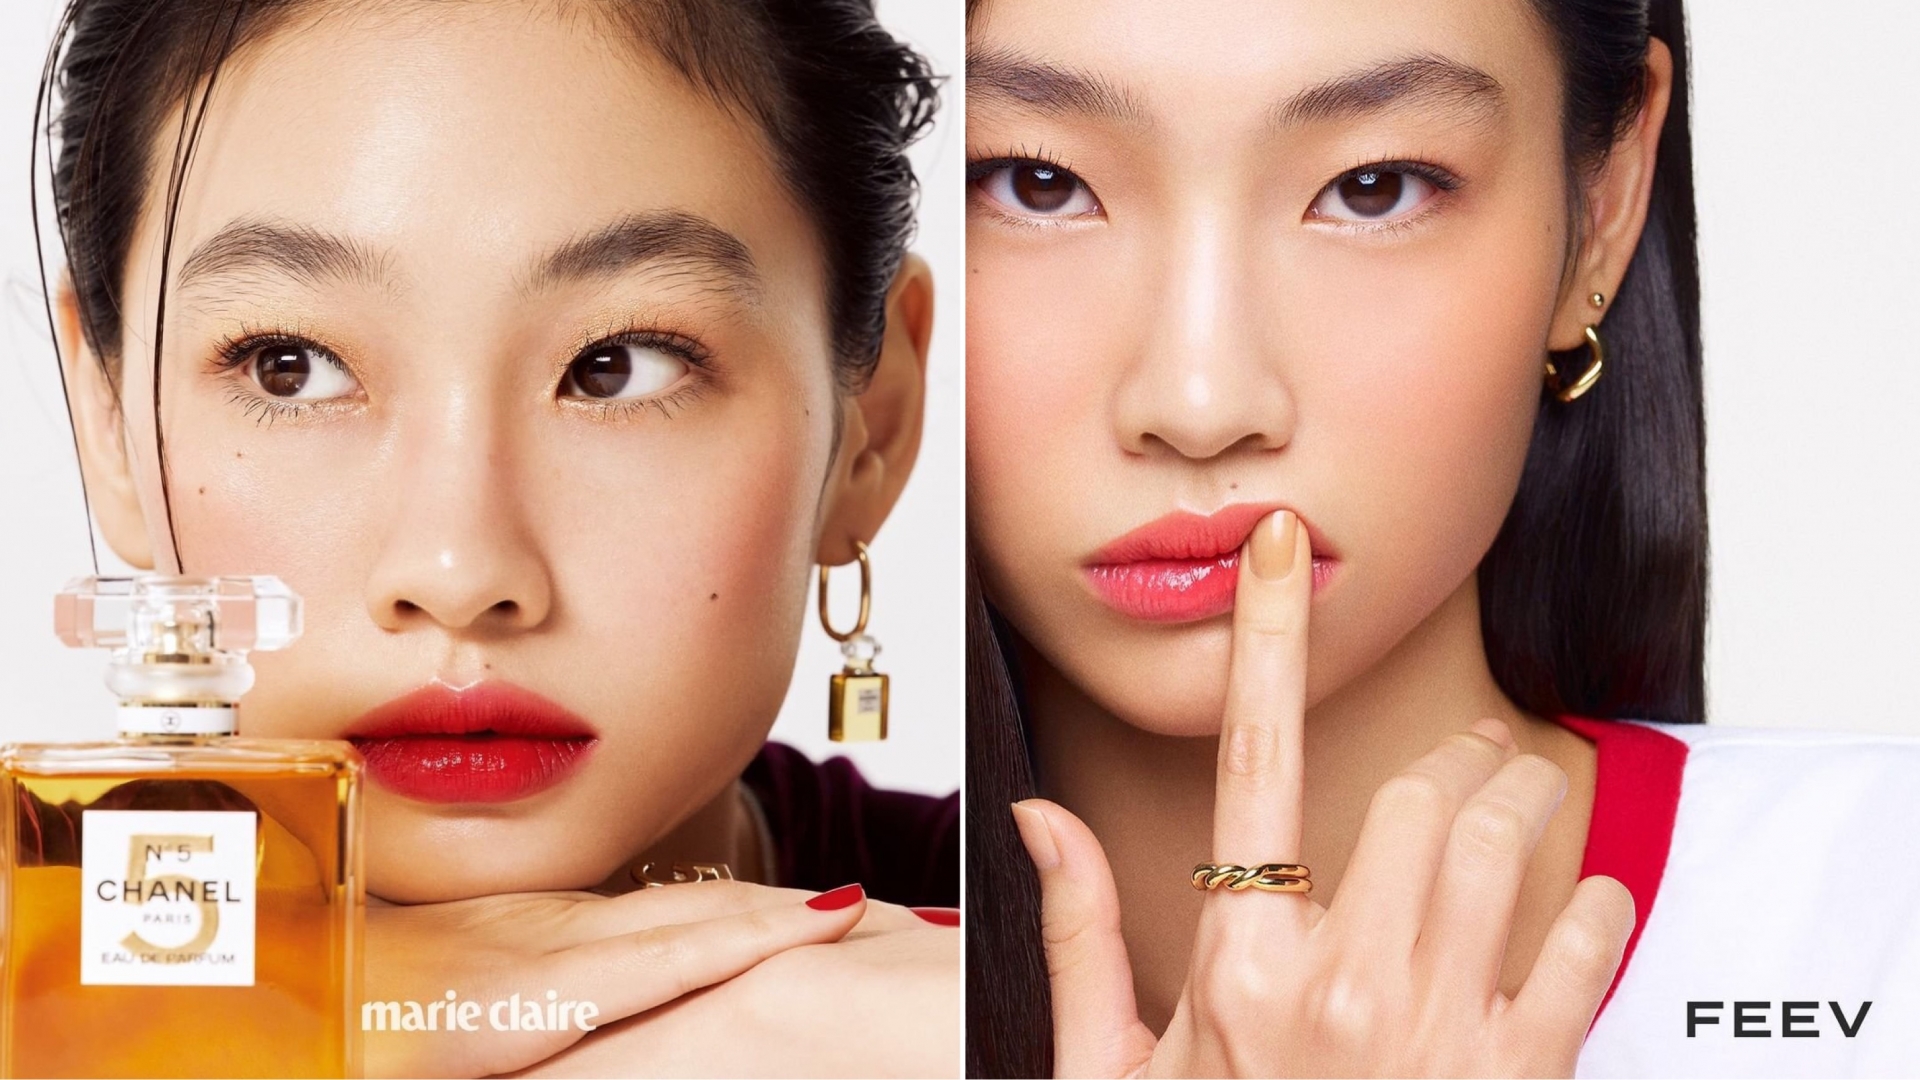 Sau khi trở thành 'nàng thơ' của Louis Vuitton, Jung Ho Yeon cực 'đắt show' quảng cáo cho các nhãn hàng nổi tiếng.